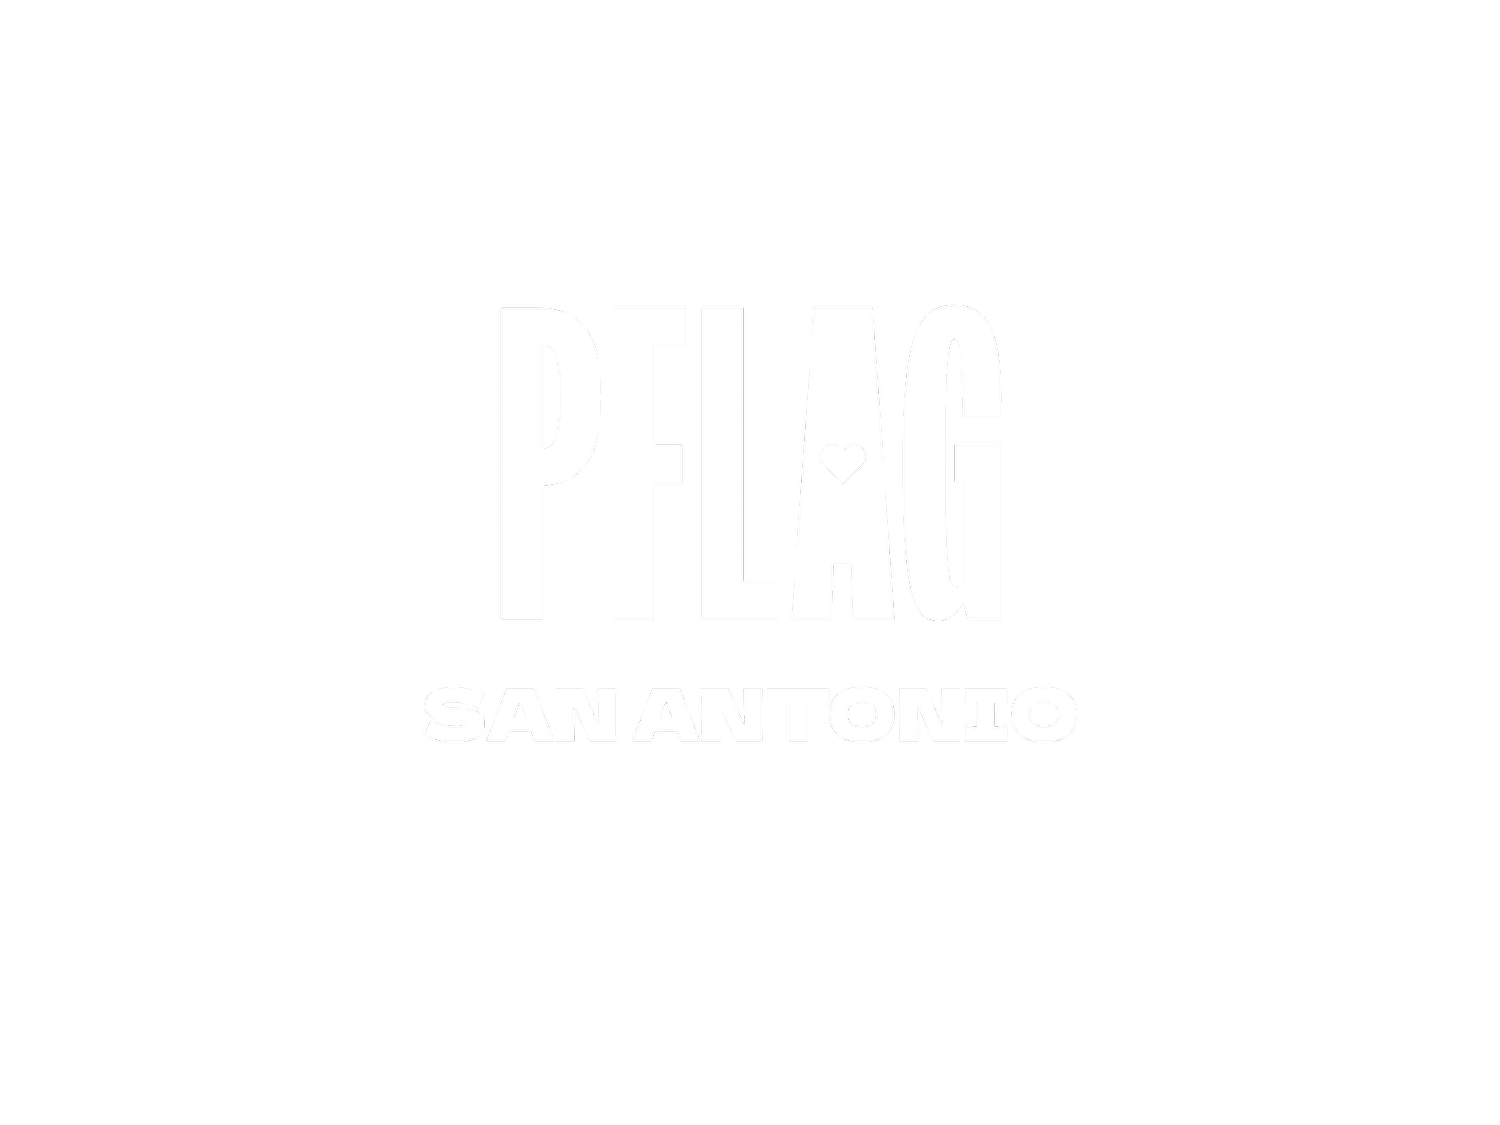 PFLAG San Antonio